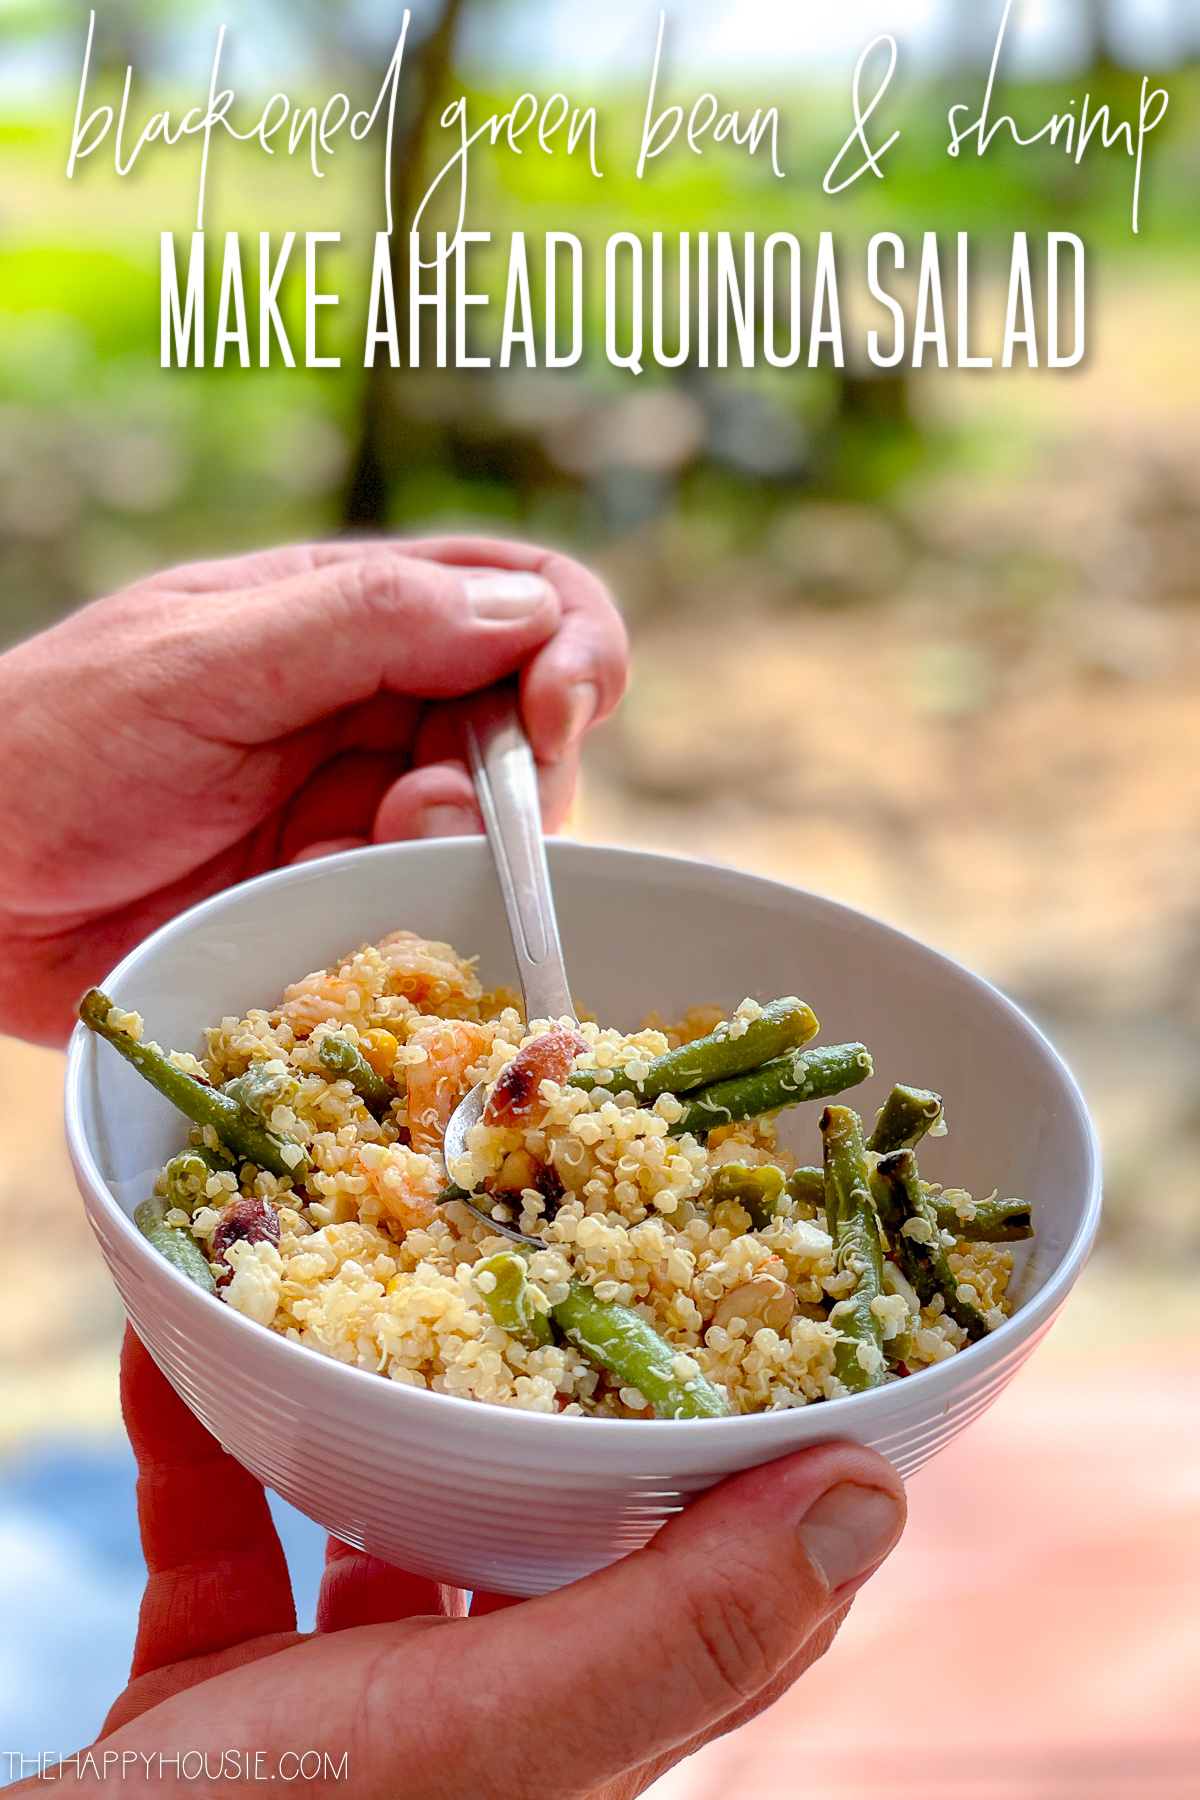 Make Ahead Quinoa Salad poster.